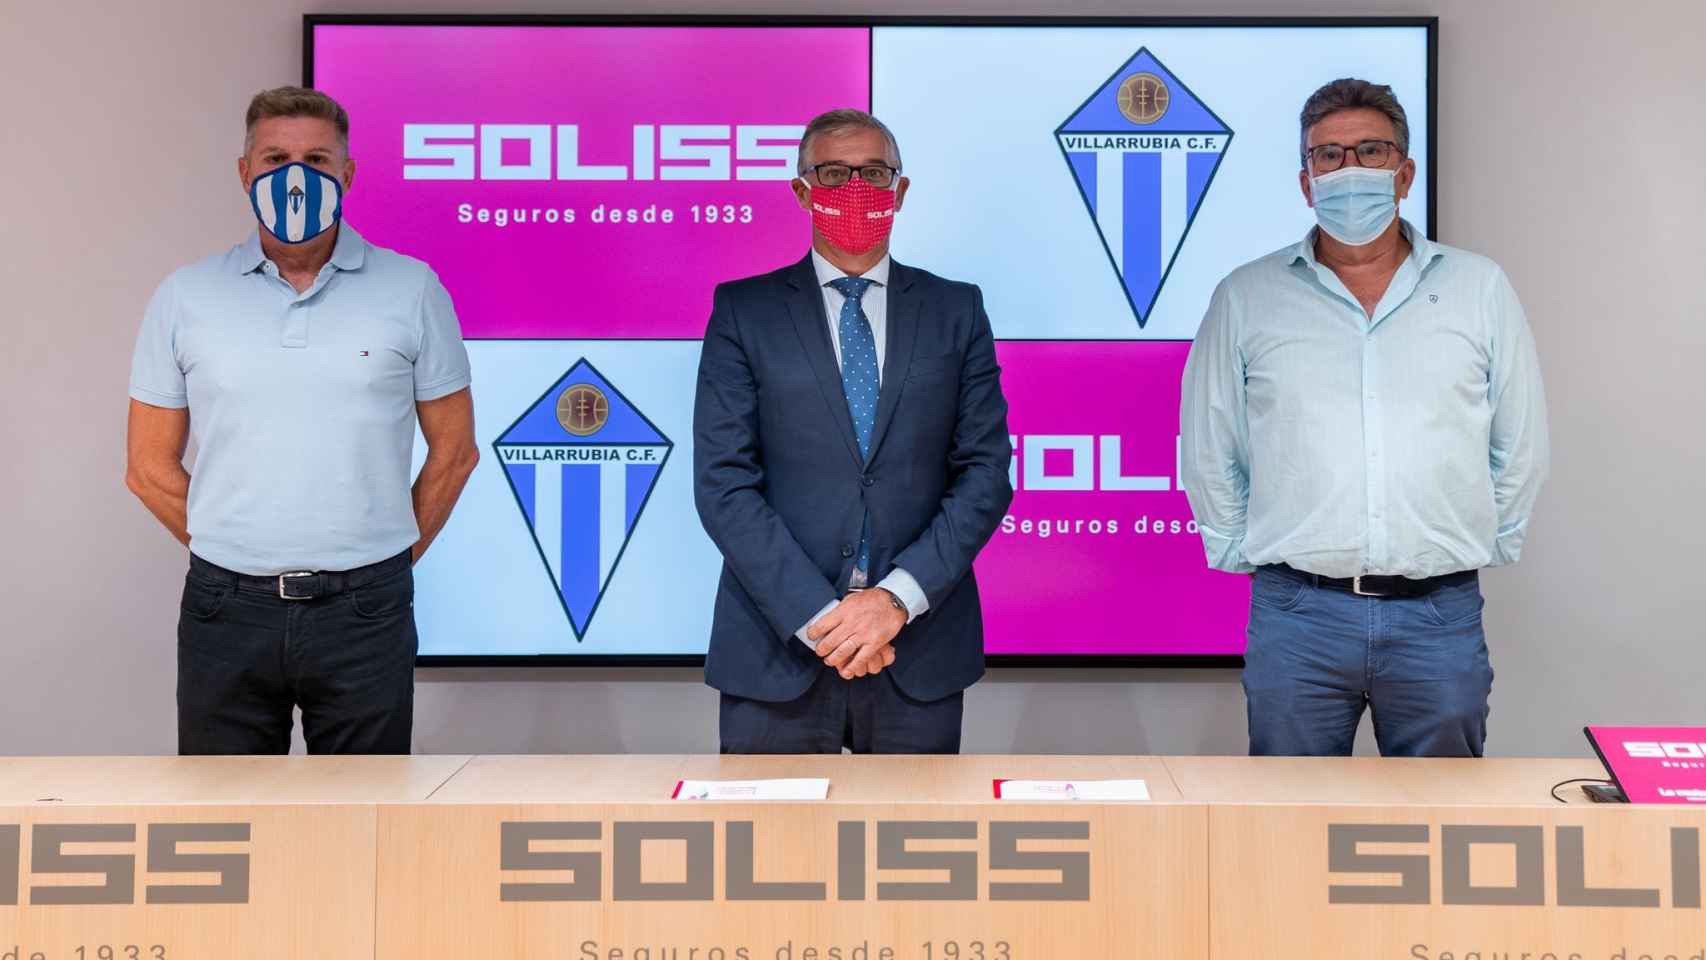 Renovación del patrocinio entre Soliss y Formac Villarrubia C. F.